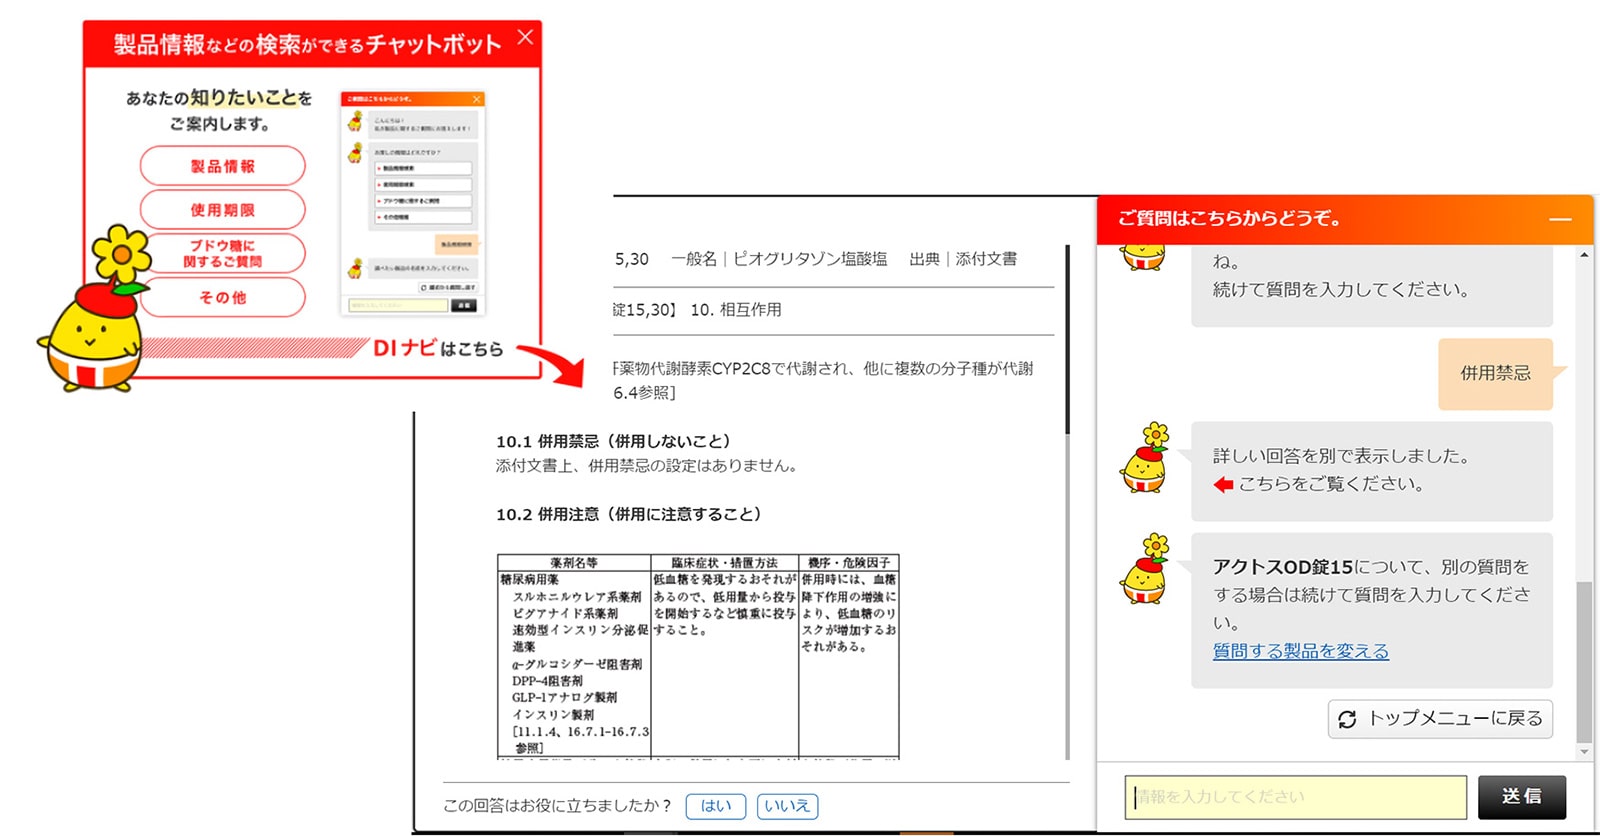 武田テバファーマ株式会社様の医療従事者向けAI検索サービス「DIナビ」の画面